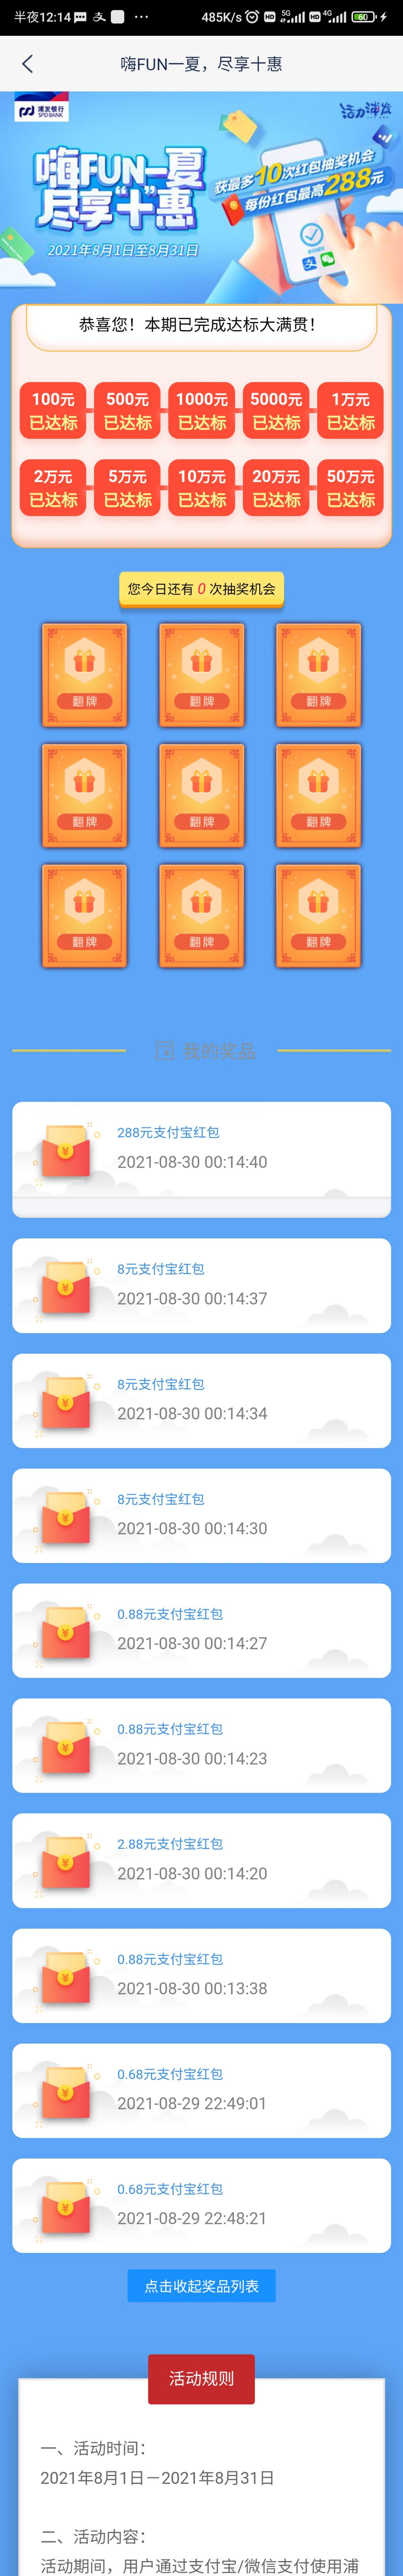 浦发app 50万转账活动水了288-惠小助(52huixz.com)